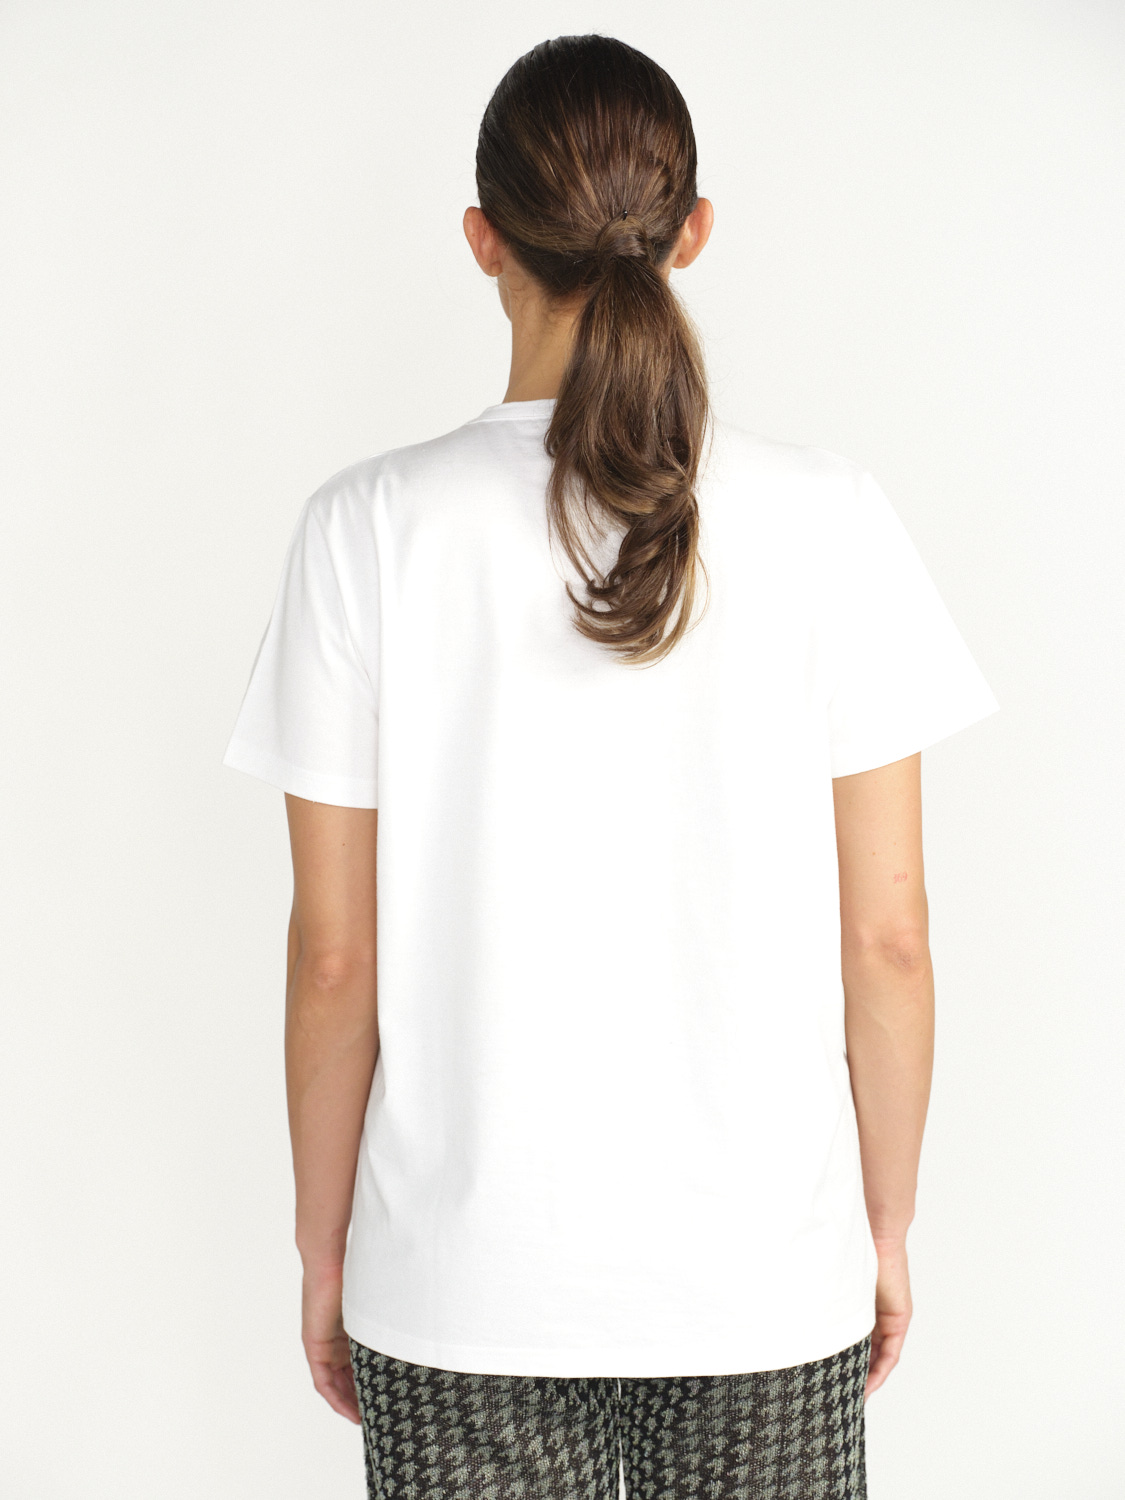 Barrie T-Shirt with logo cashmere patch - T-shirt avec logo patch en cachemire grün S